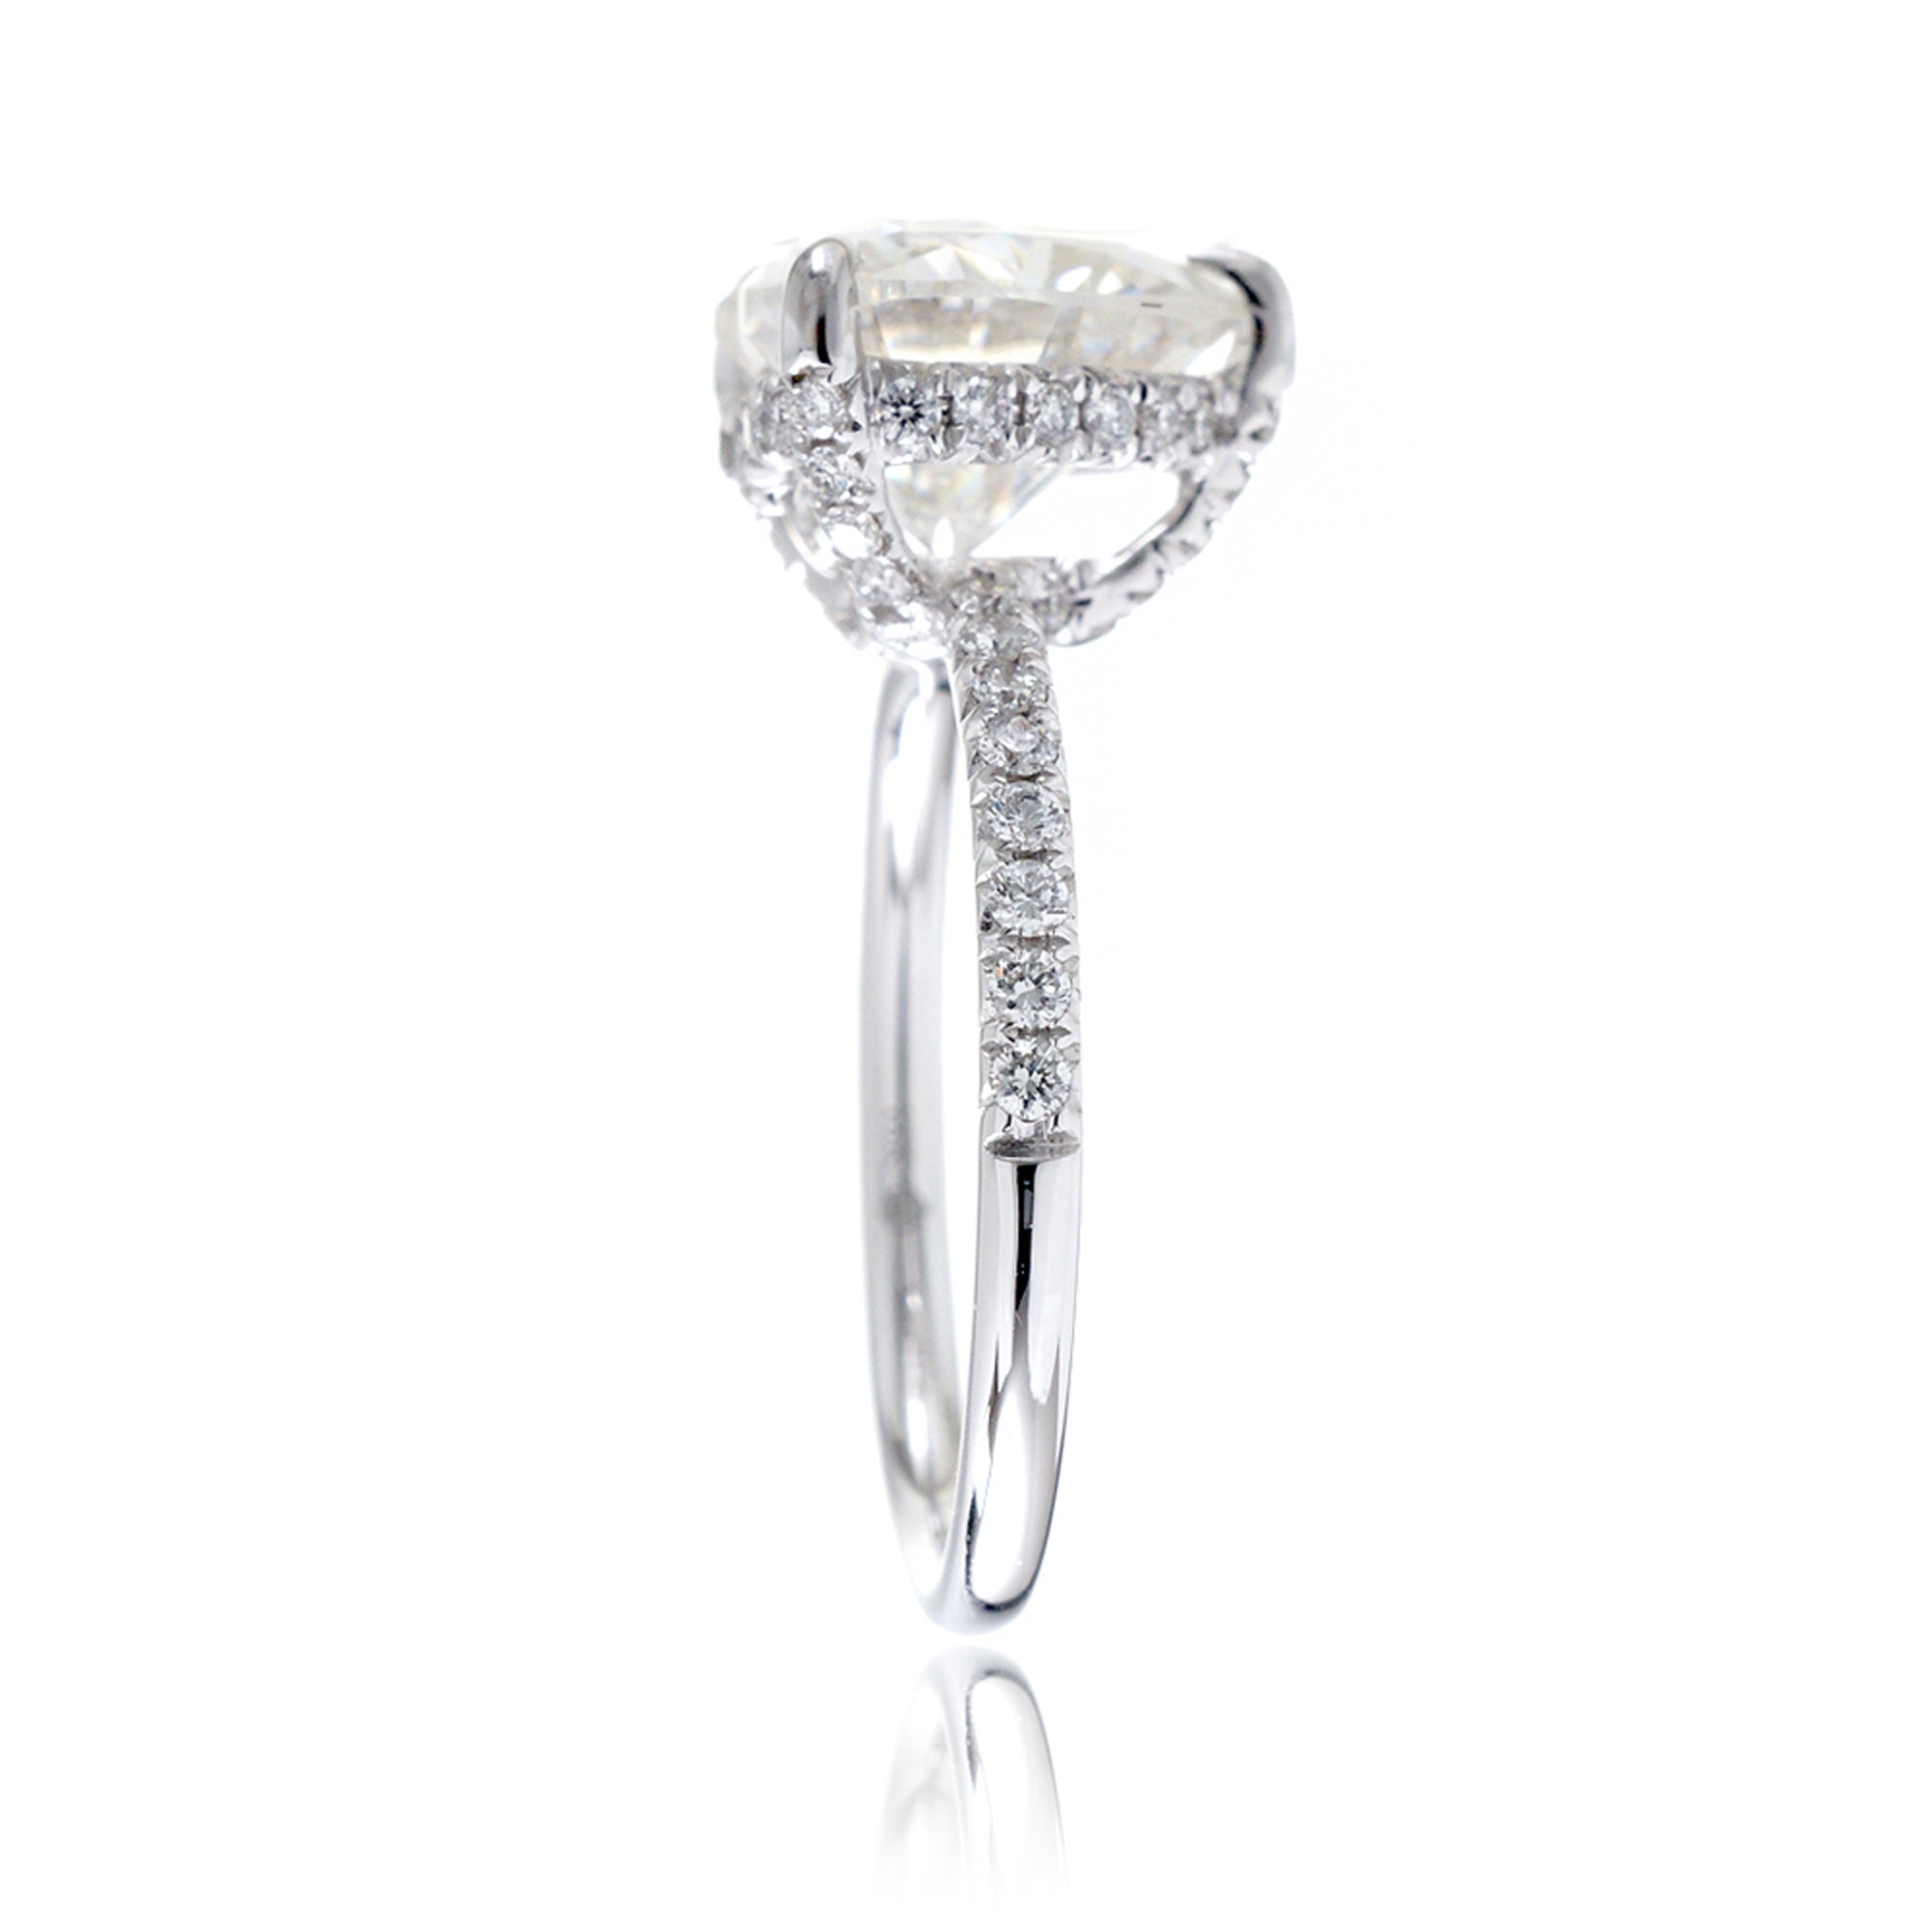 Heart shape moissanite diamond band engagement ring white gold - The Ava